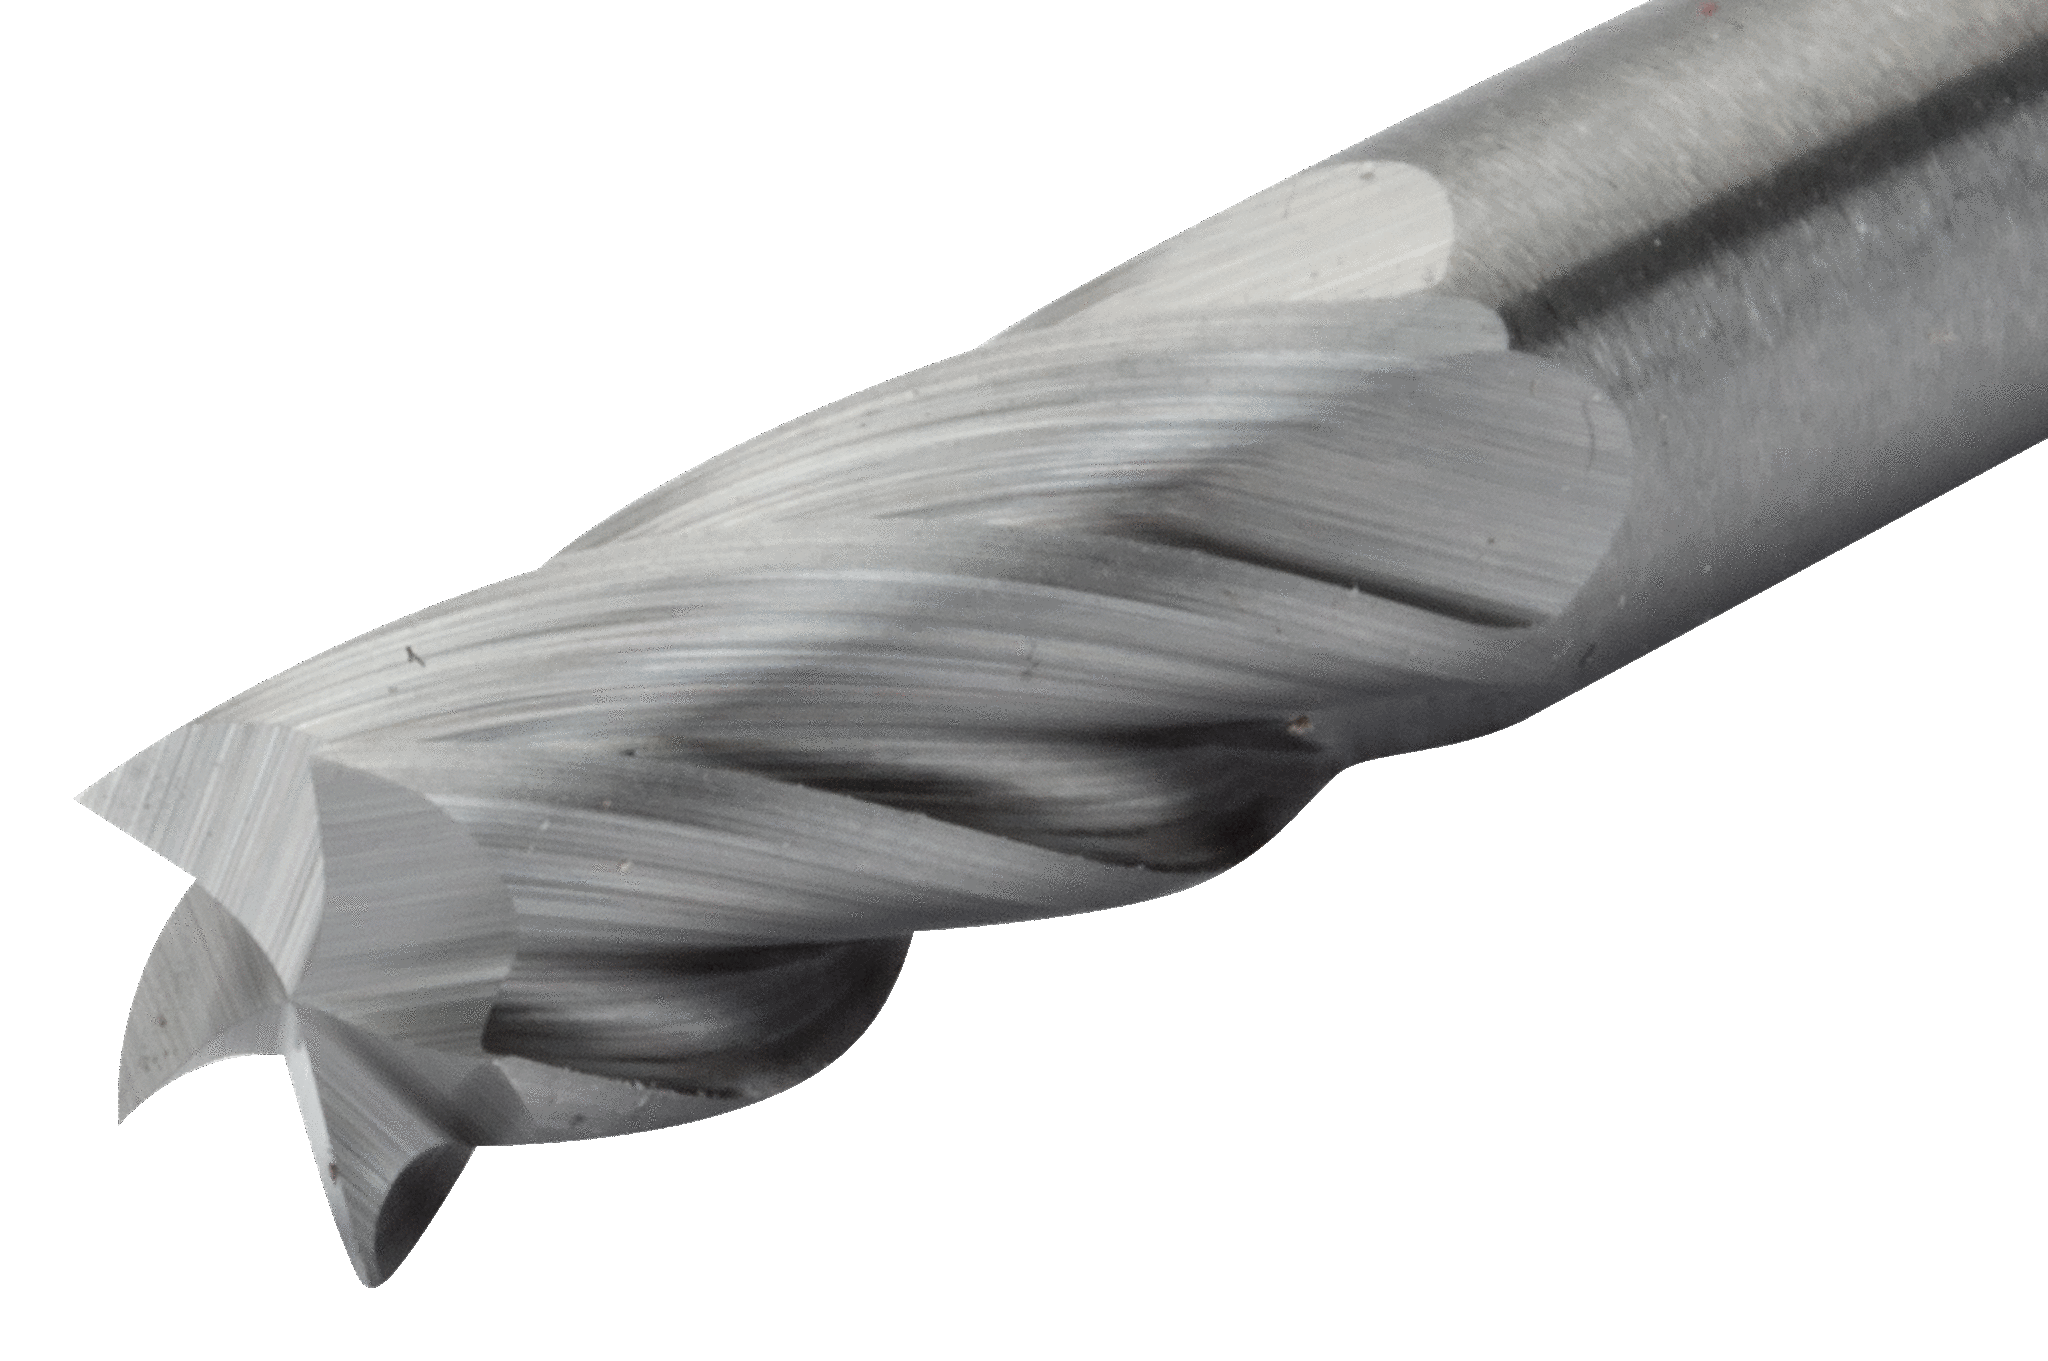 картинка Твердосплавные борфрезы с цилиндрической головкой по алюминию BAHCO A0616AL06E от магазина "Элит-инструмент"